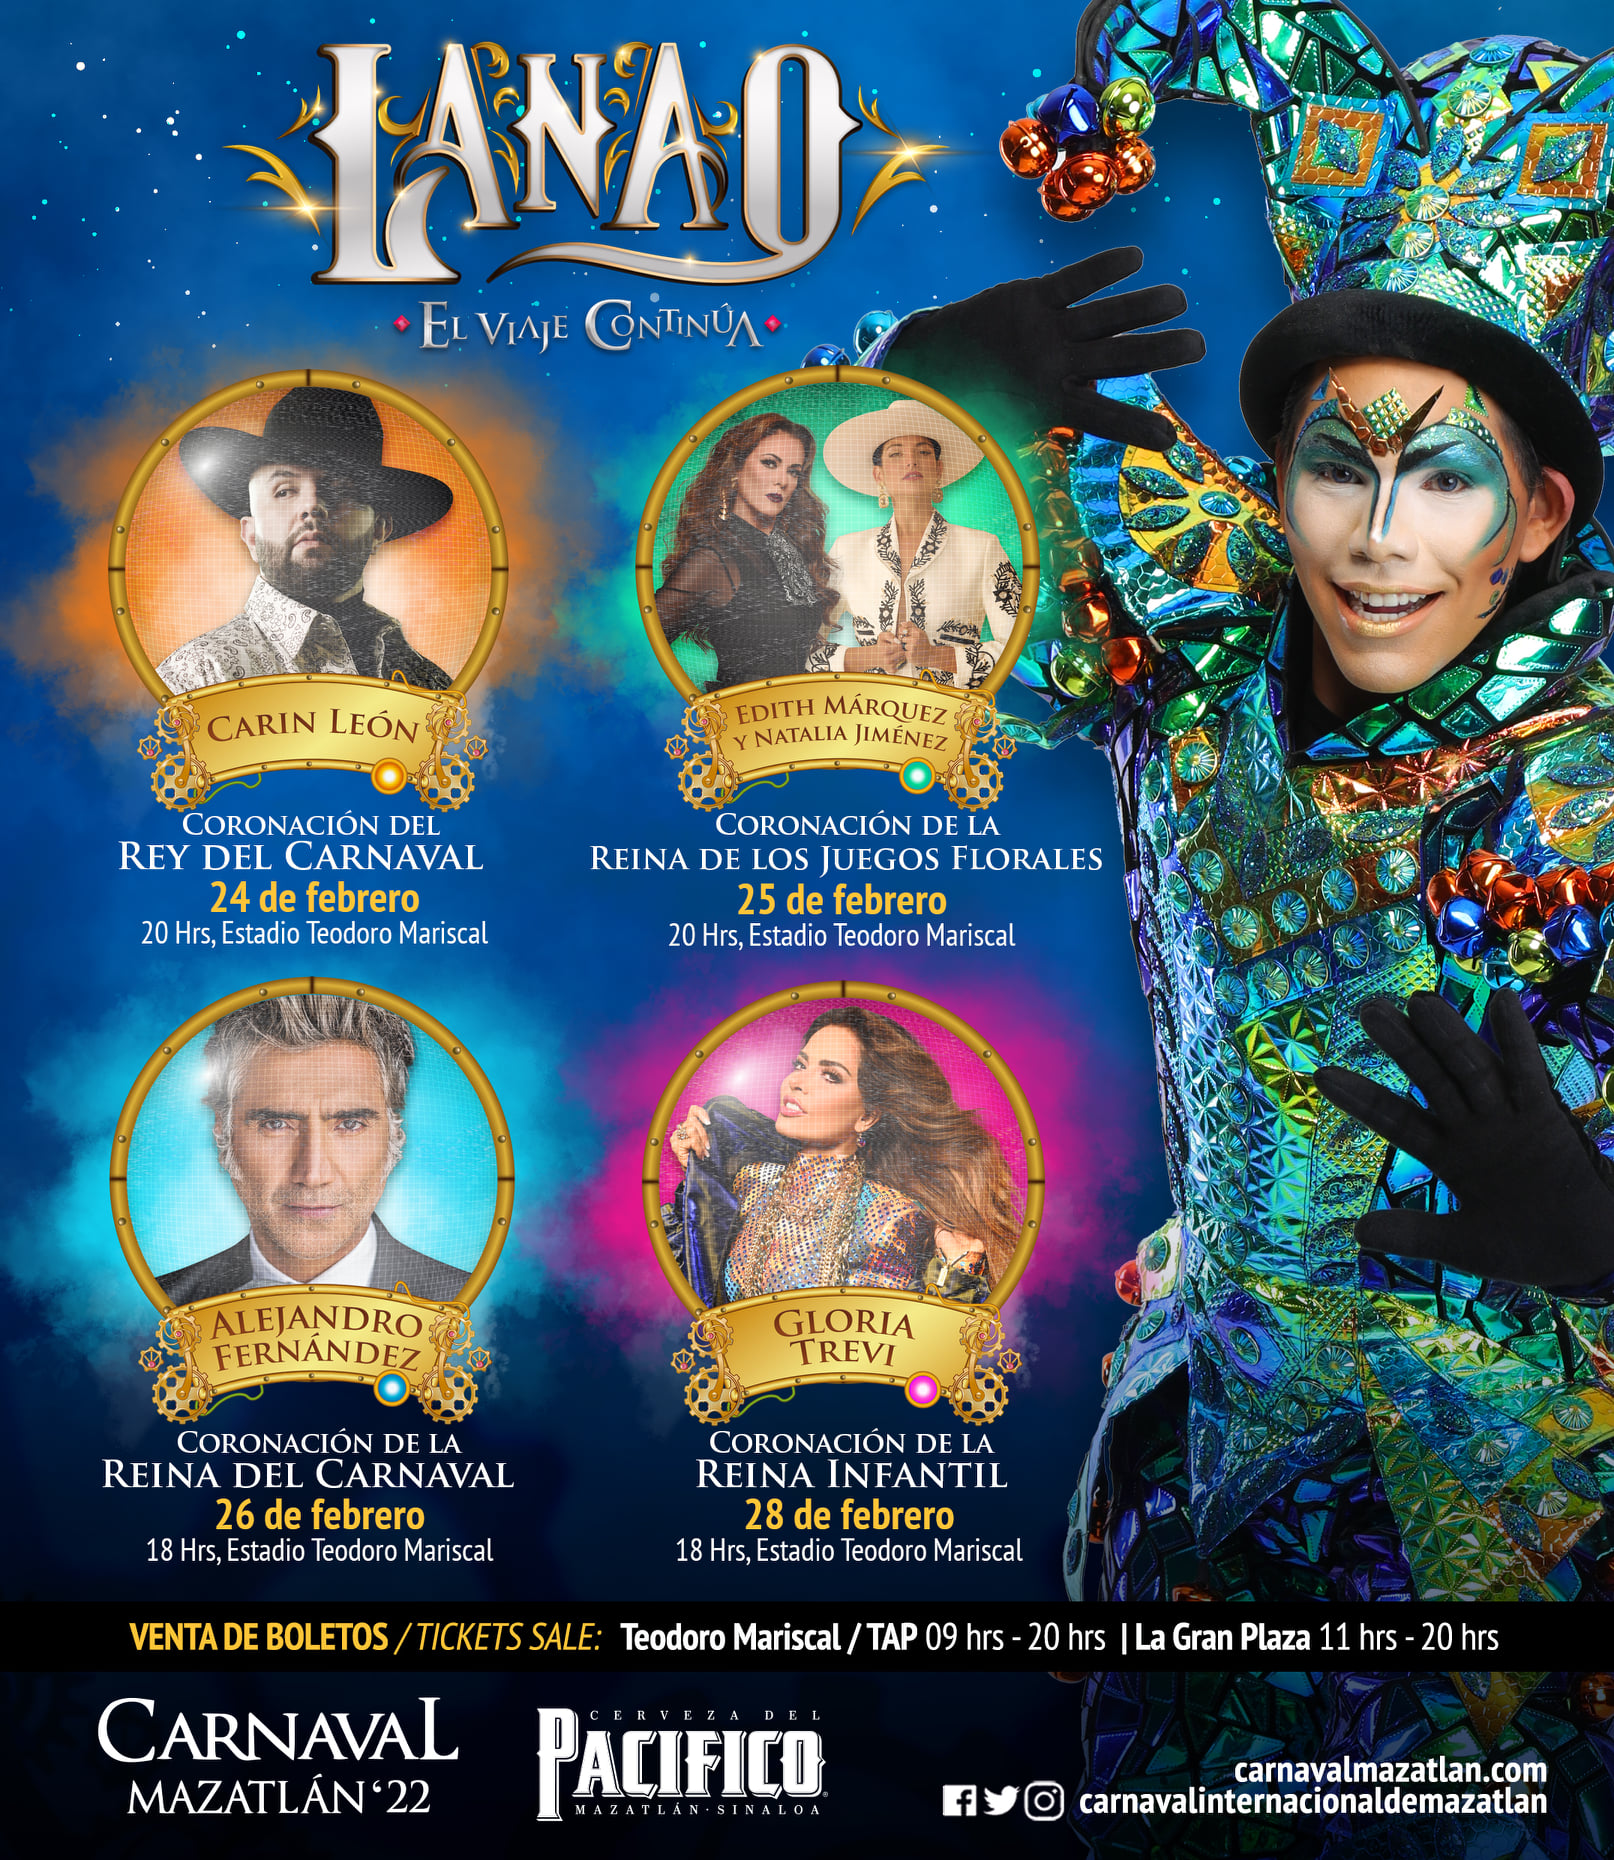 Ahora sí, este es el elenco del Carnaval Internacional de Mazatlán 2022